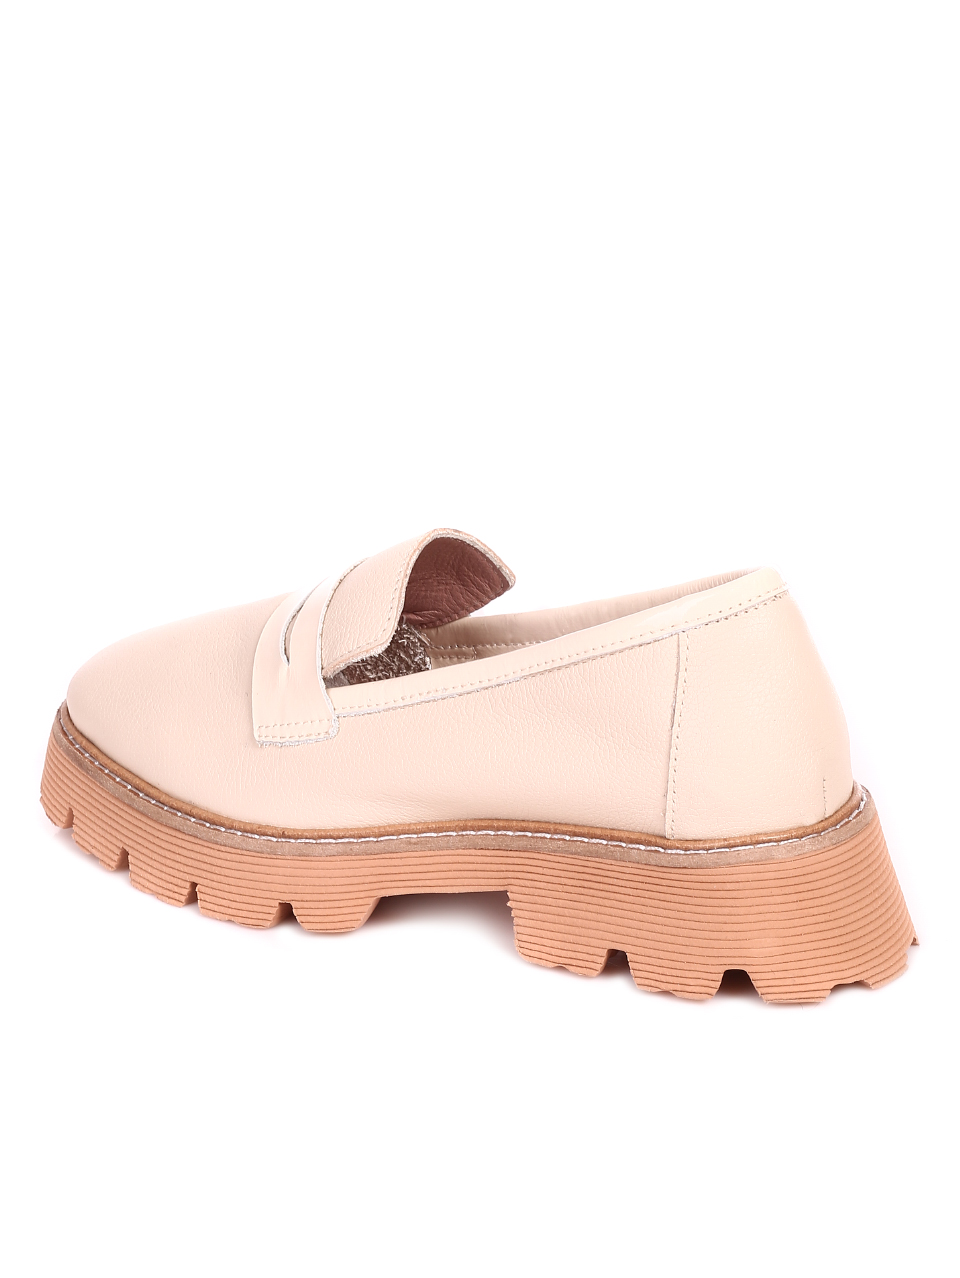 Дамски обувки от естествена кожа и естествен лак 3AT-21311 beige